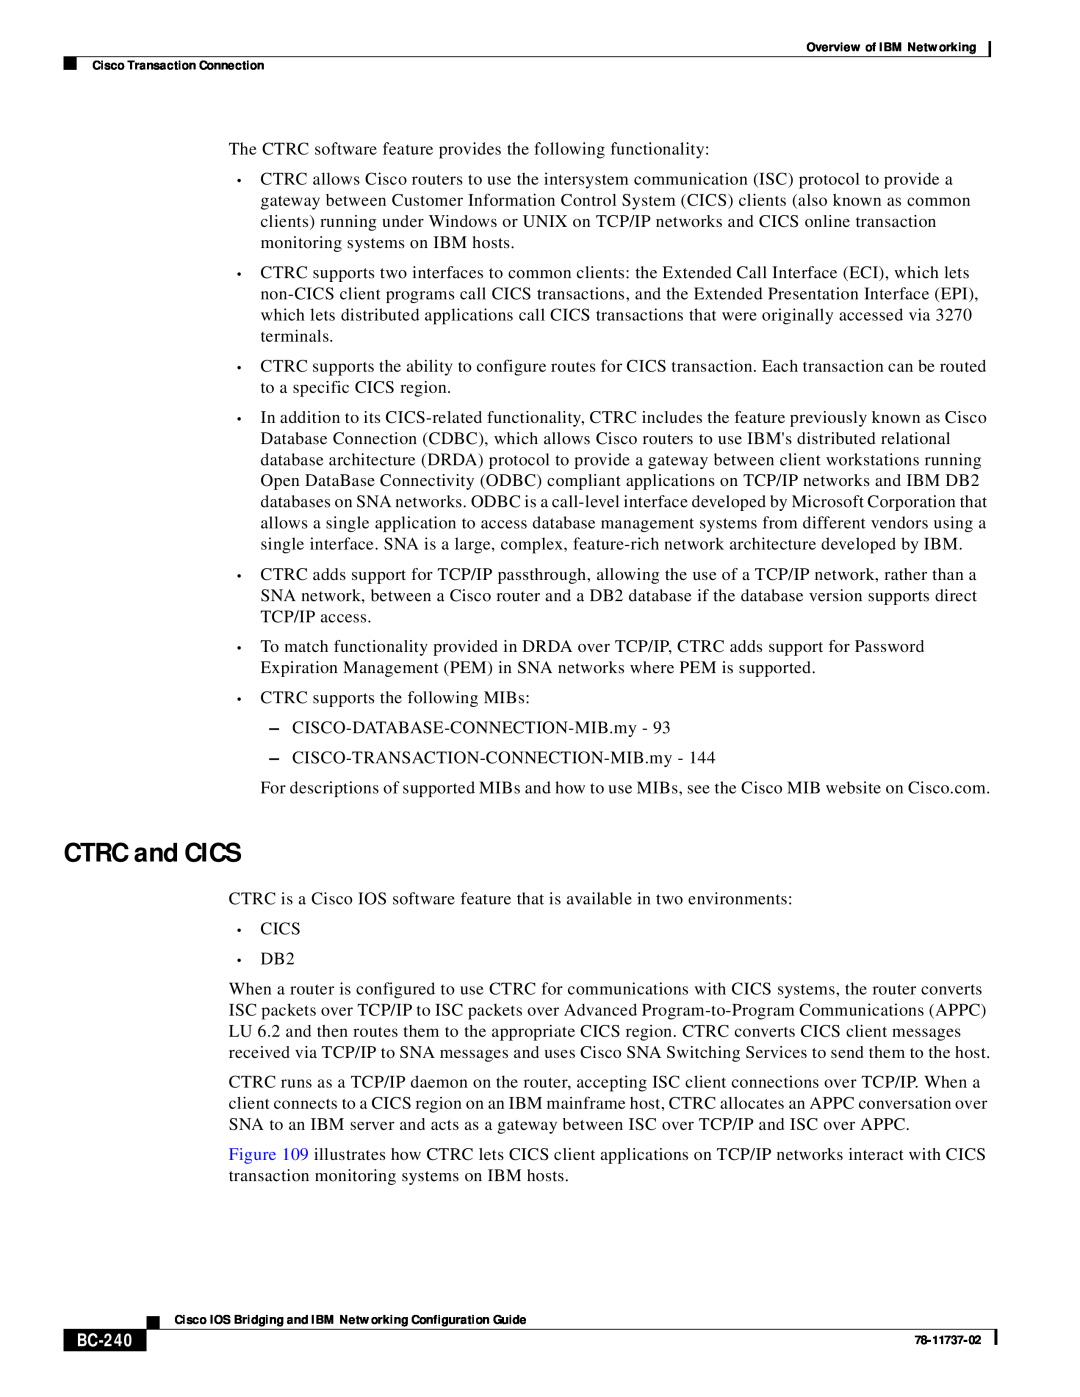 IBM BC-201 manual CTRC and CICS, BC-240 